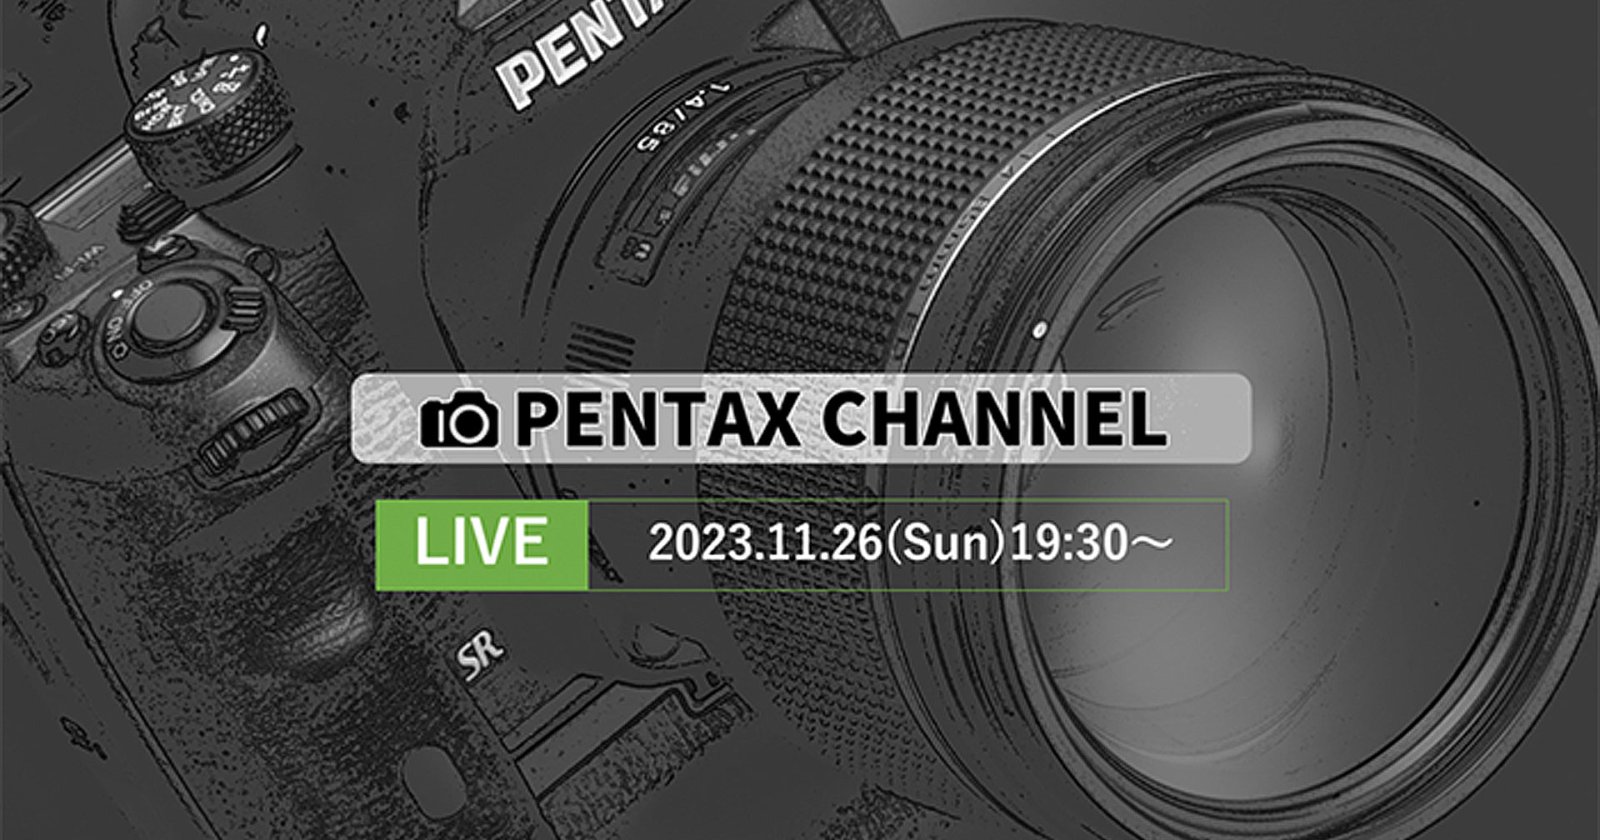 PENTAX แง้มภาพตัวอย่าง เตรียมเปิดตัวของใหม่ 26 พฤศจิกายน!